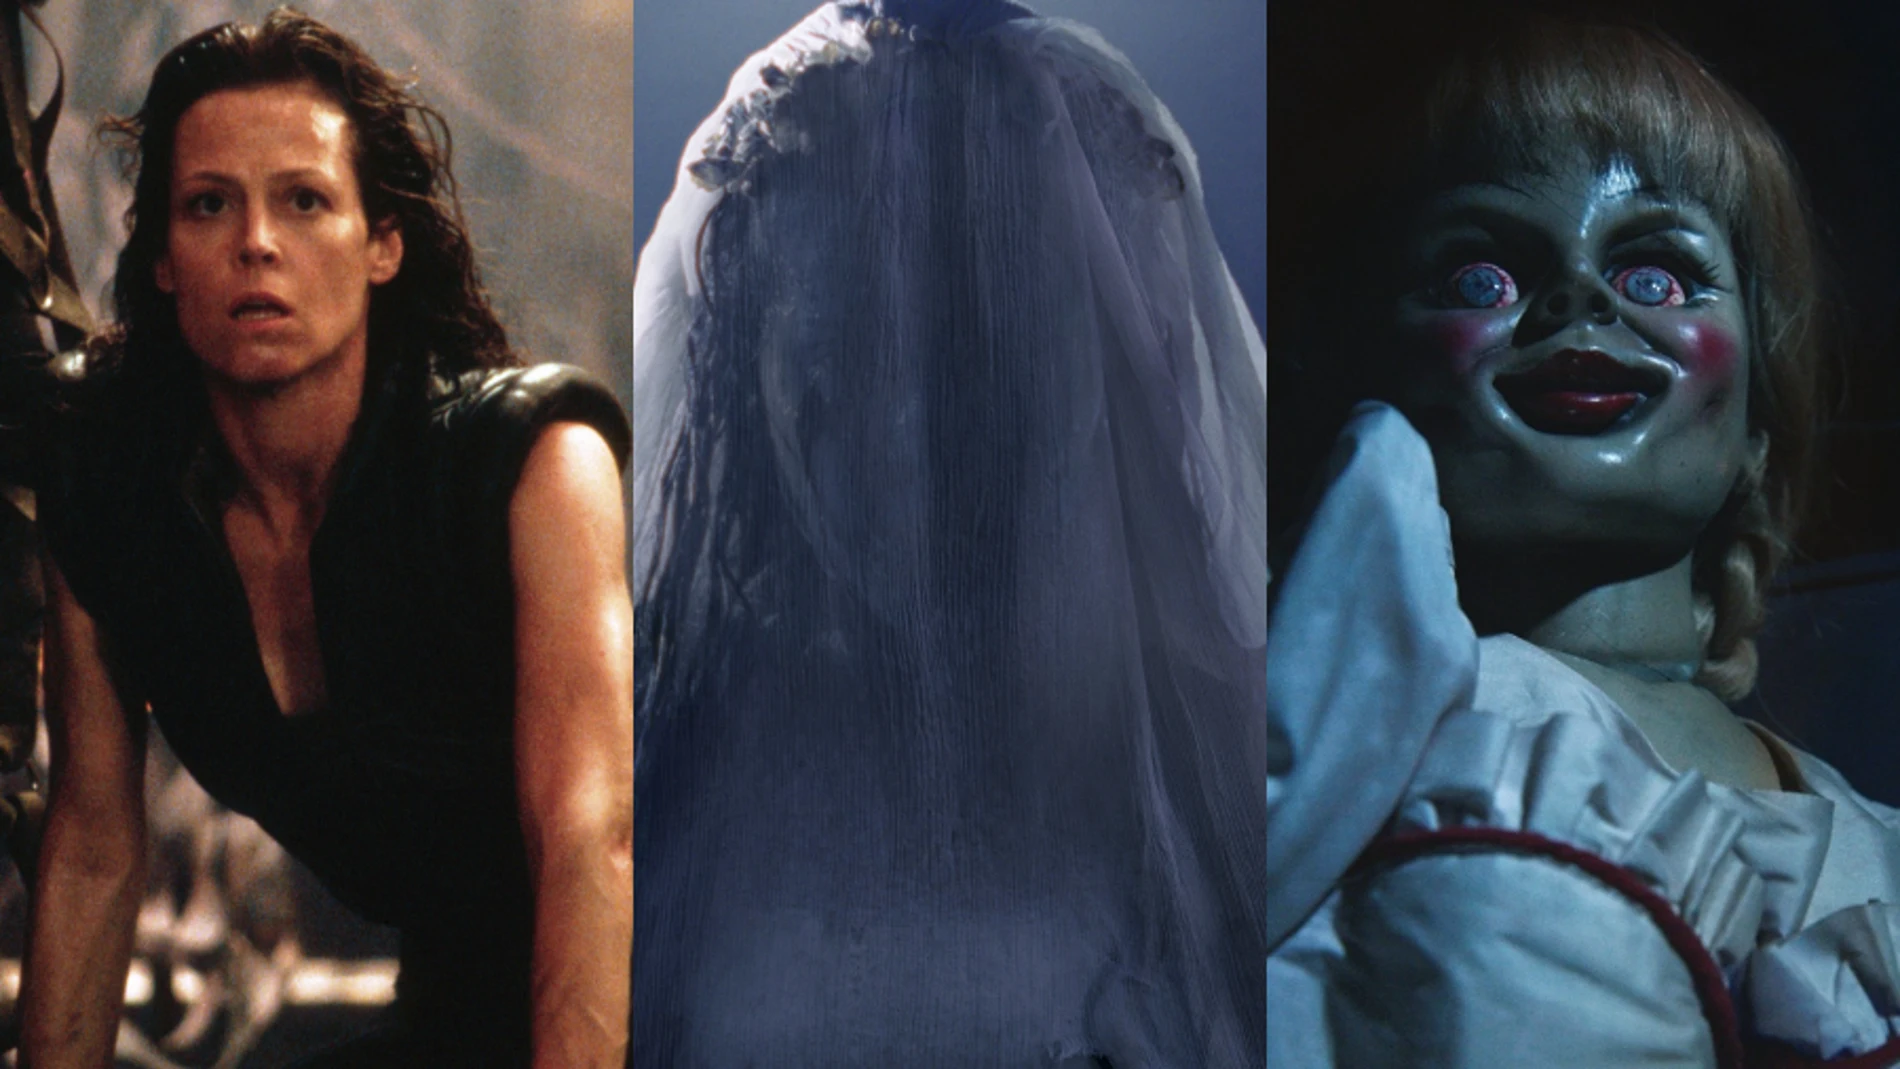 Fotogramas de películas de terror: 'Alien', 'la Llorona' y 'Anabelle vuelve a casa'